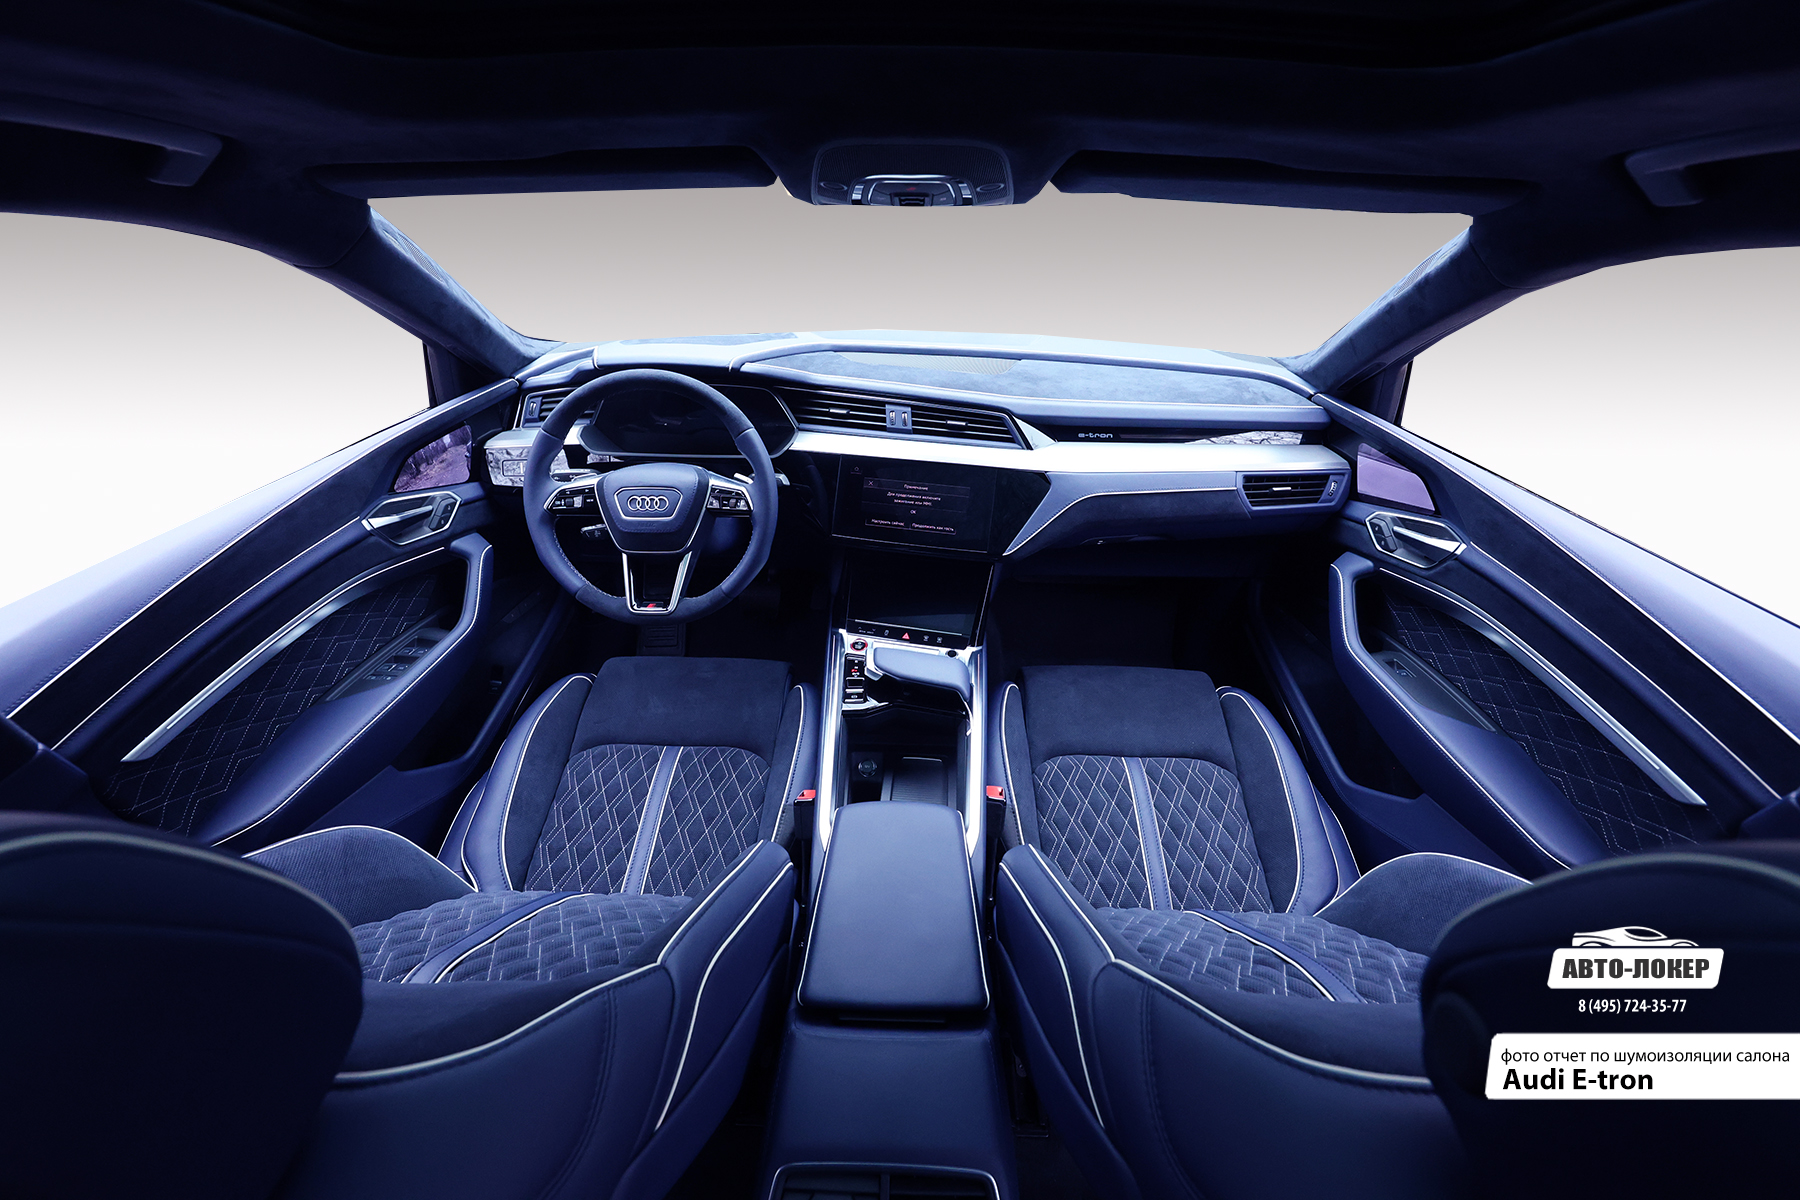 Перетяжка салона Audi E-tron в натуральную кожу и алькантару